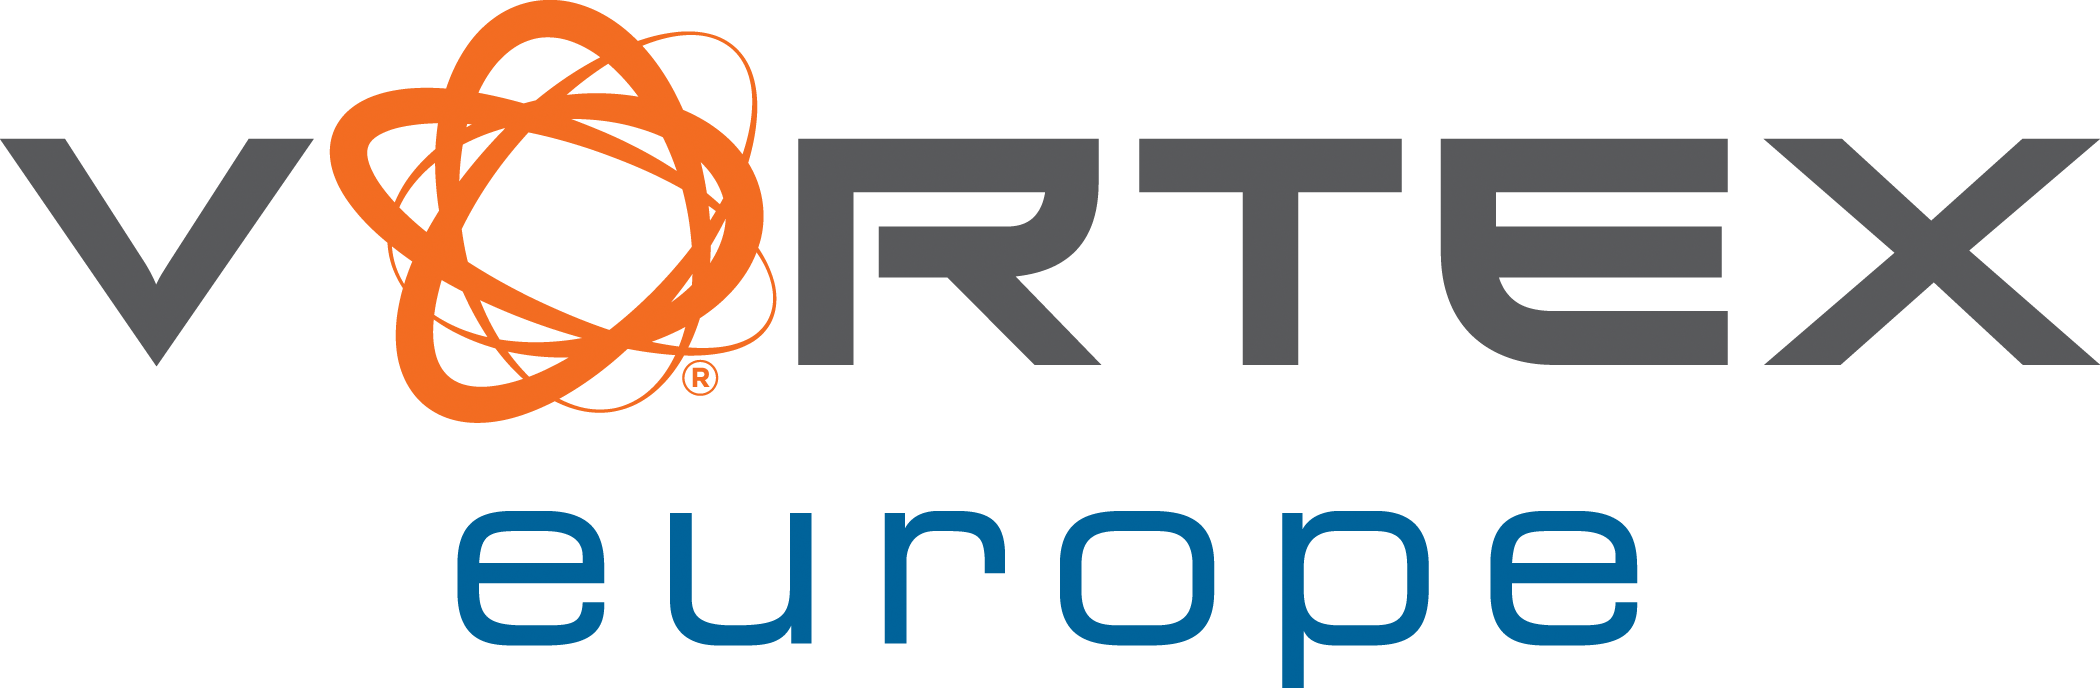 Vortex_Europe_Solid_RGB-1